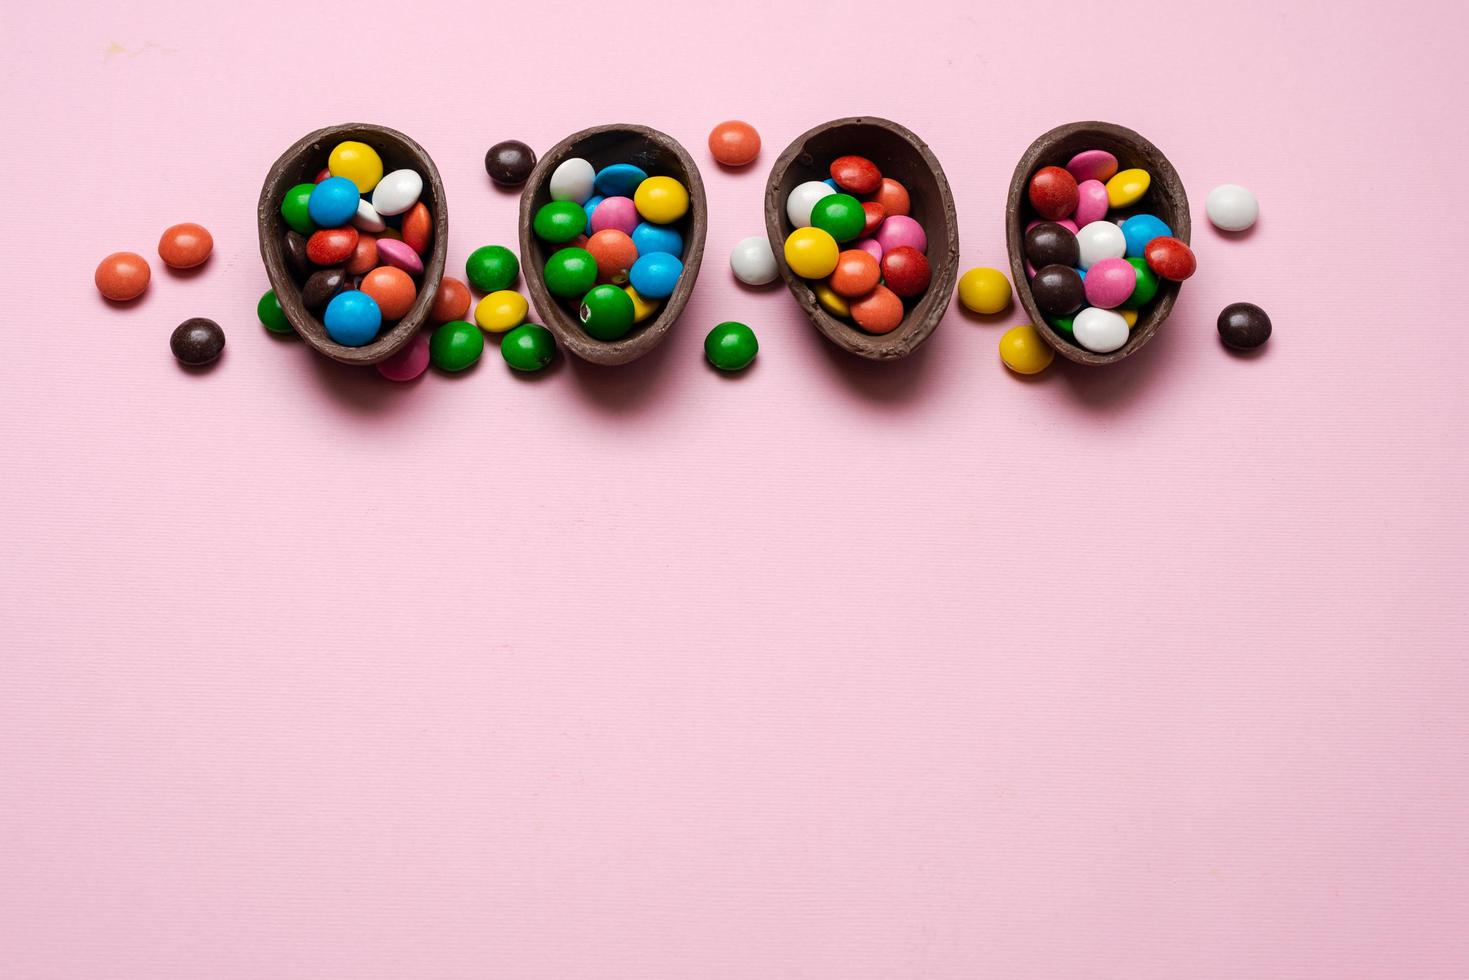 vrolijk Pasen overhead met chocolade paaseieren en decoraties op een roze achtergrond met kopieerruimte. foto